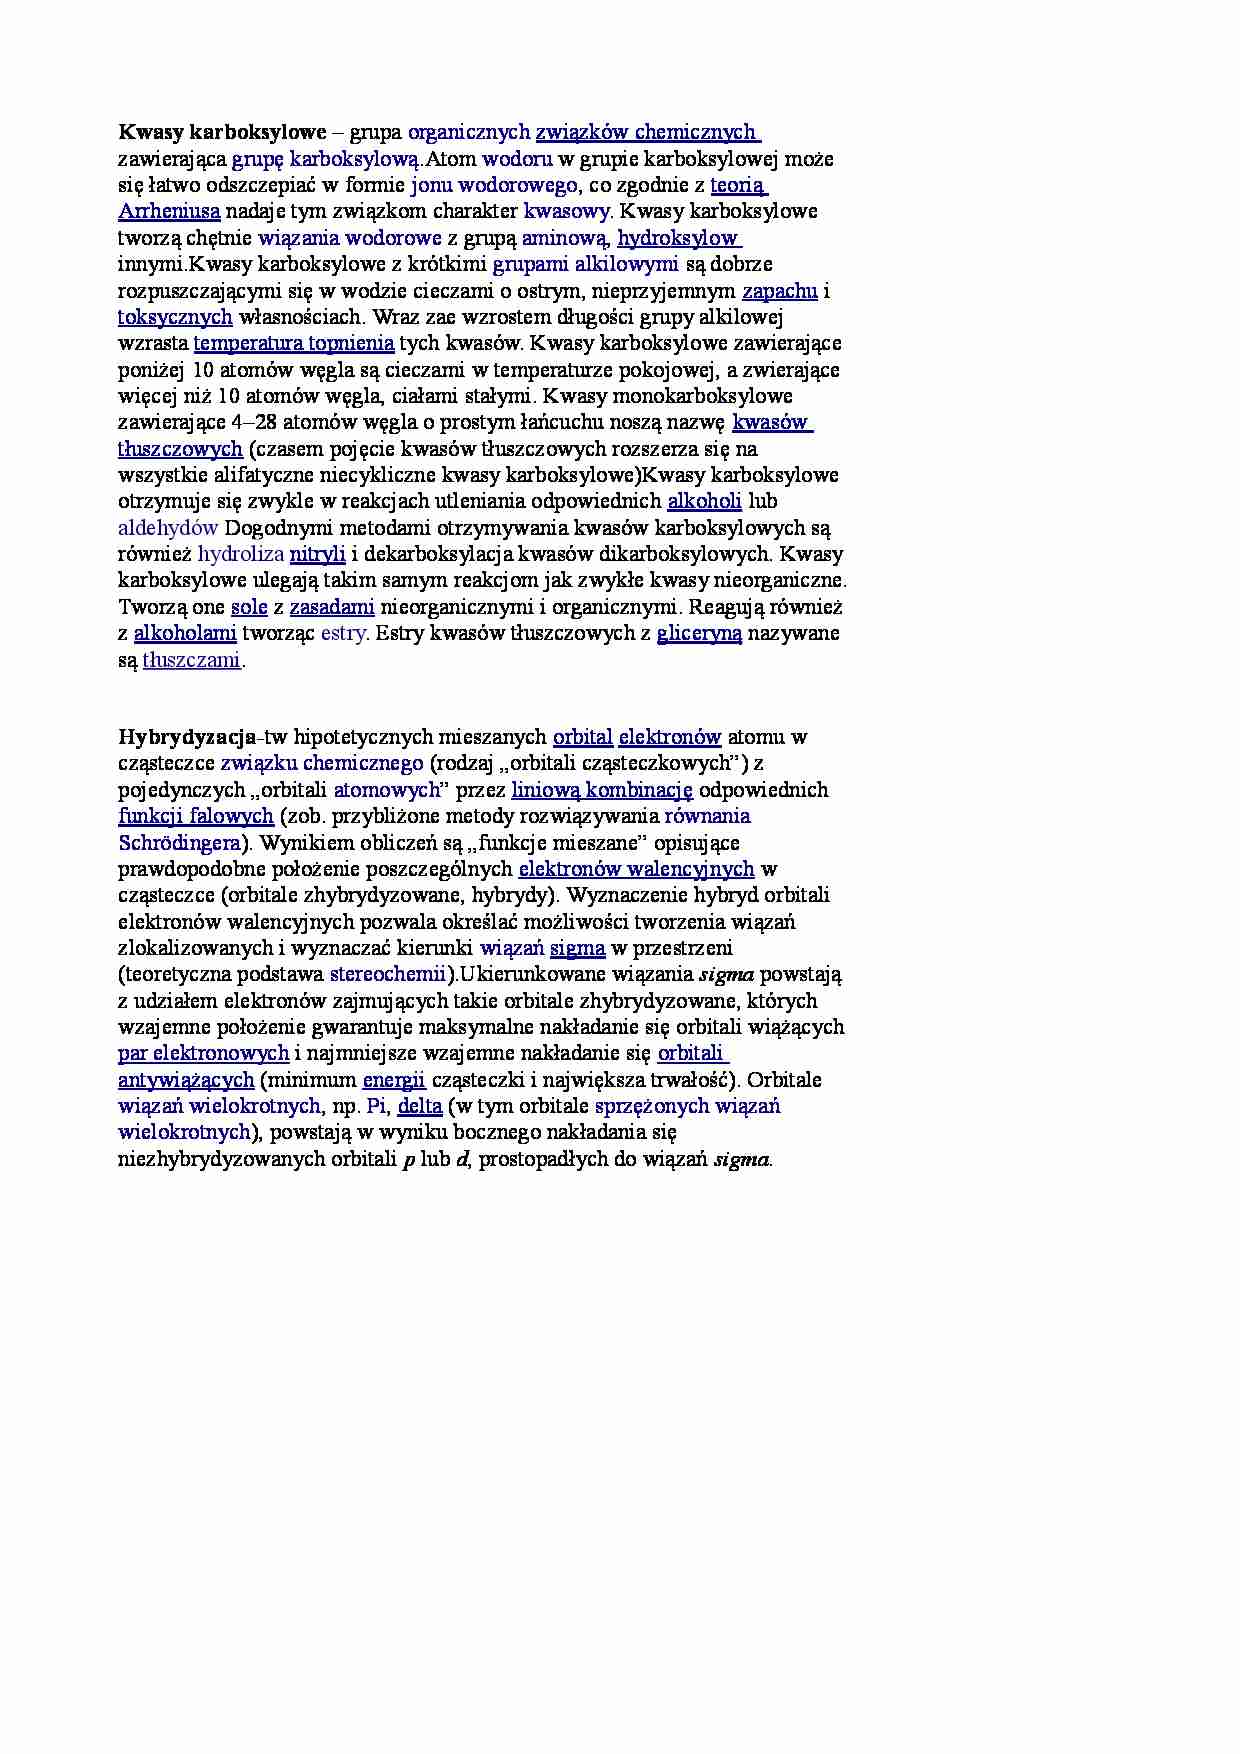 Kwasy karboksykowe i hybrydyzacja - strona 1